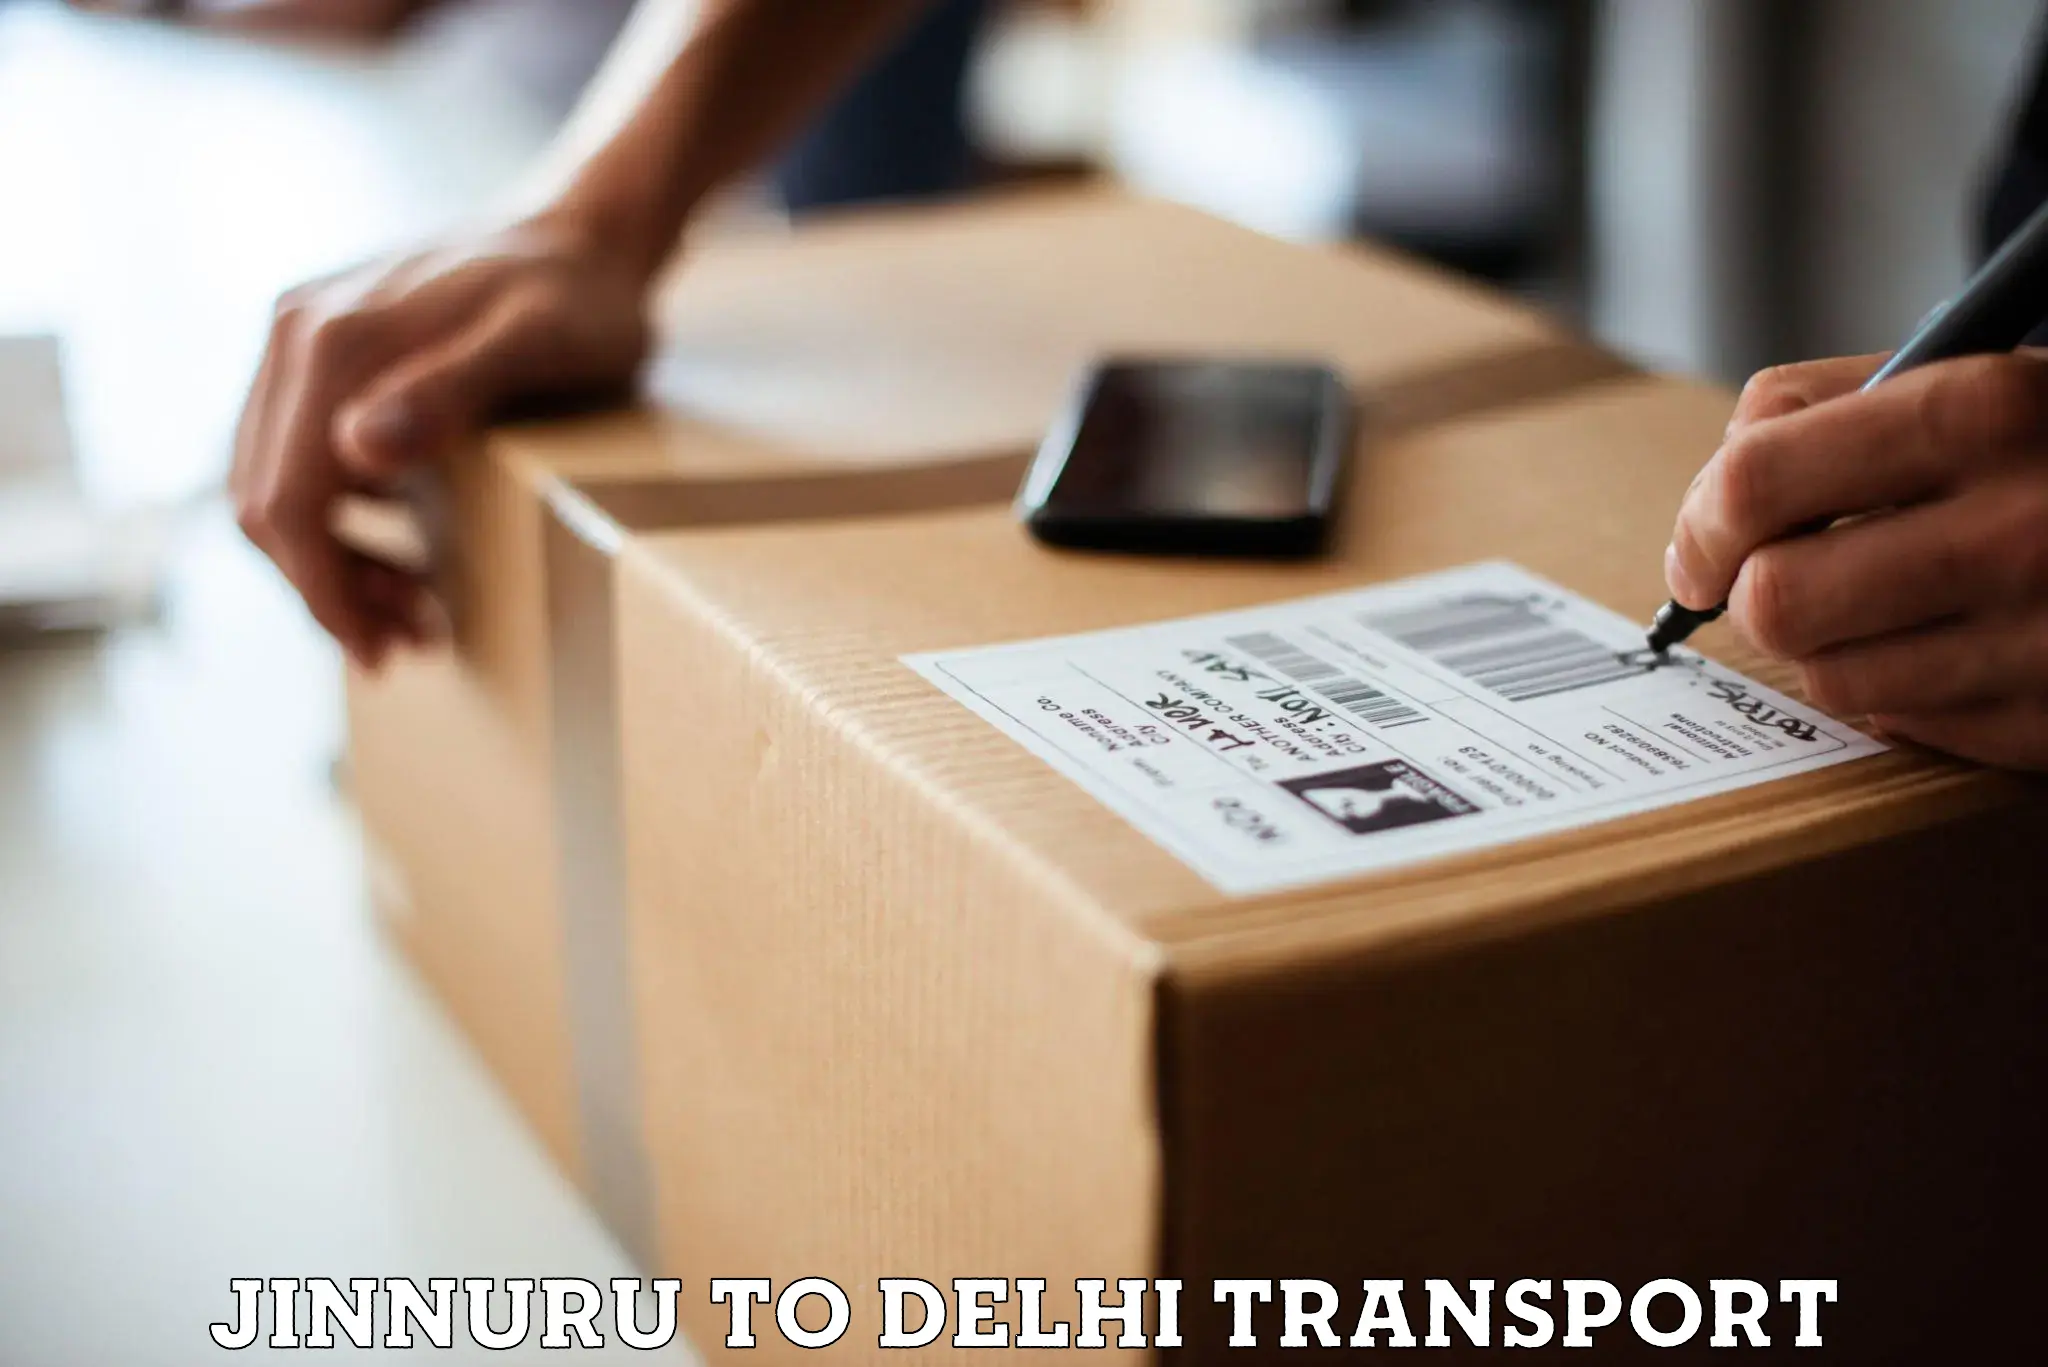 Furniture transport service Jinnuru to Delhi